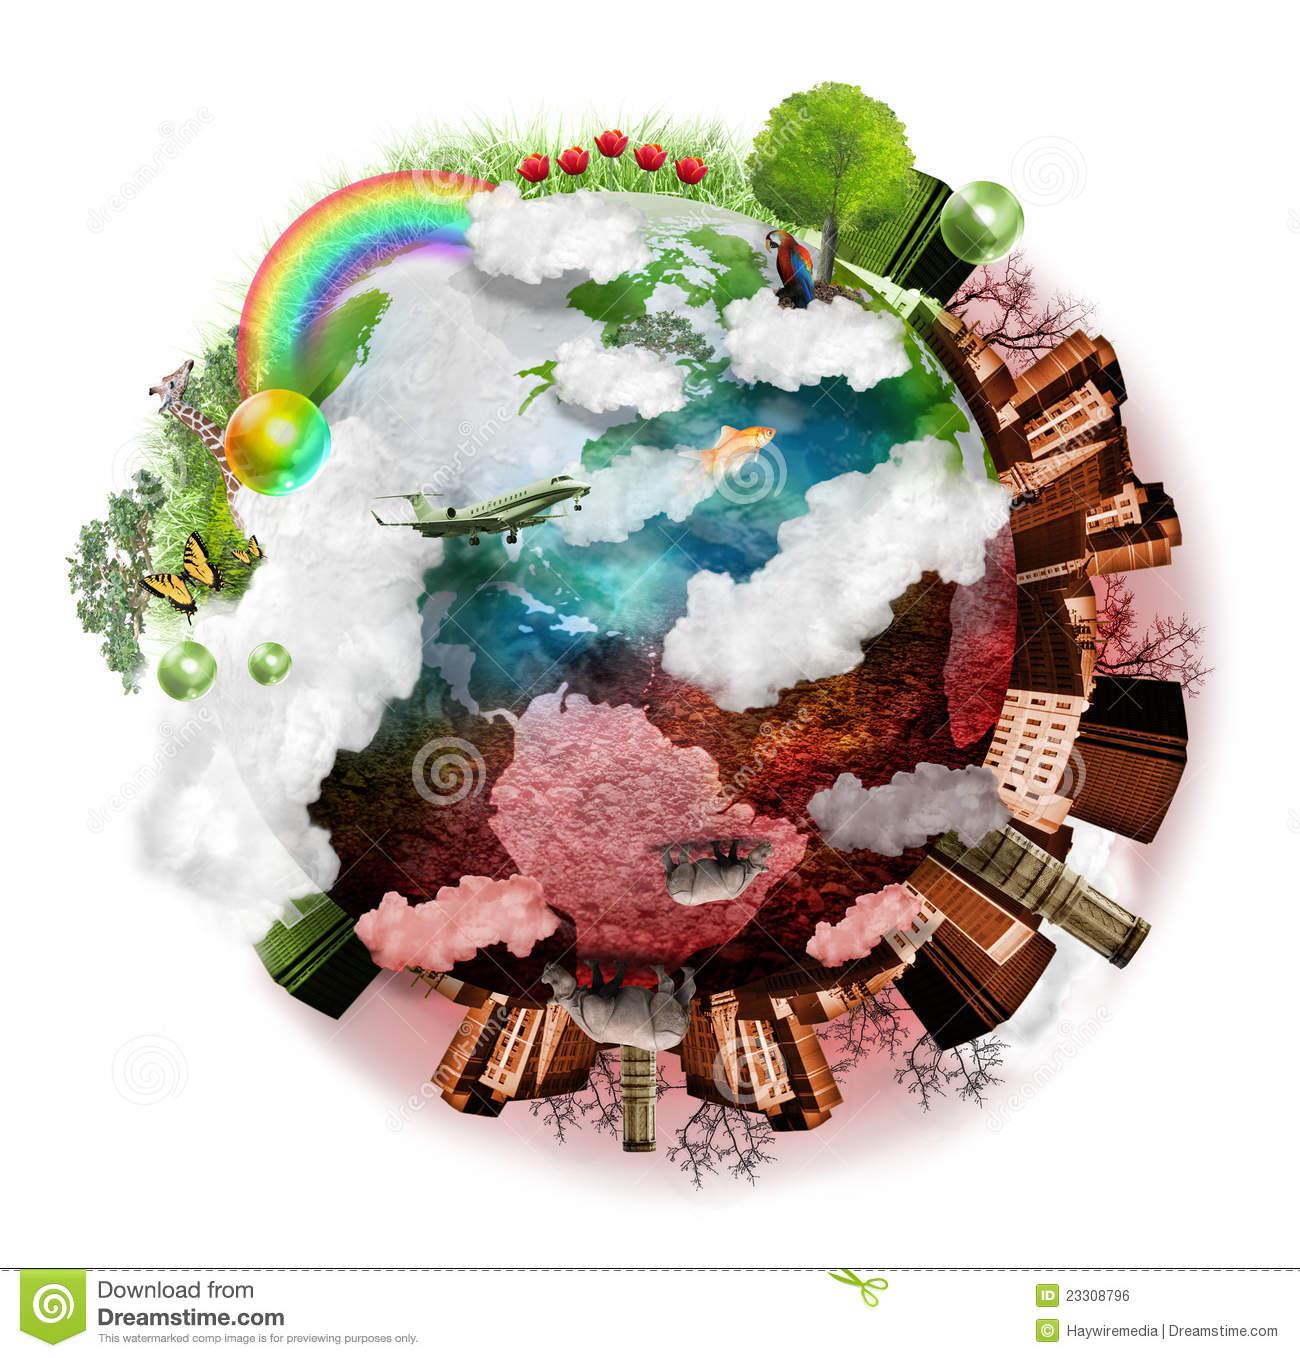 Aire Limpio Y Mezcla Contaminada De La Tierra Stock de ilustración -  Ilustración de clima, oscuro: 23308796